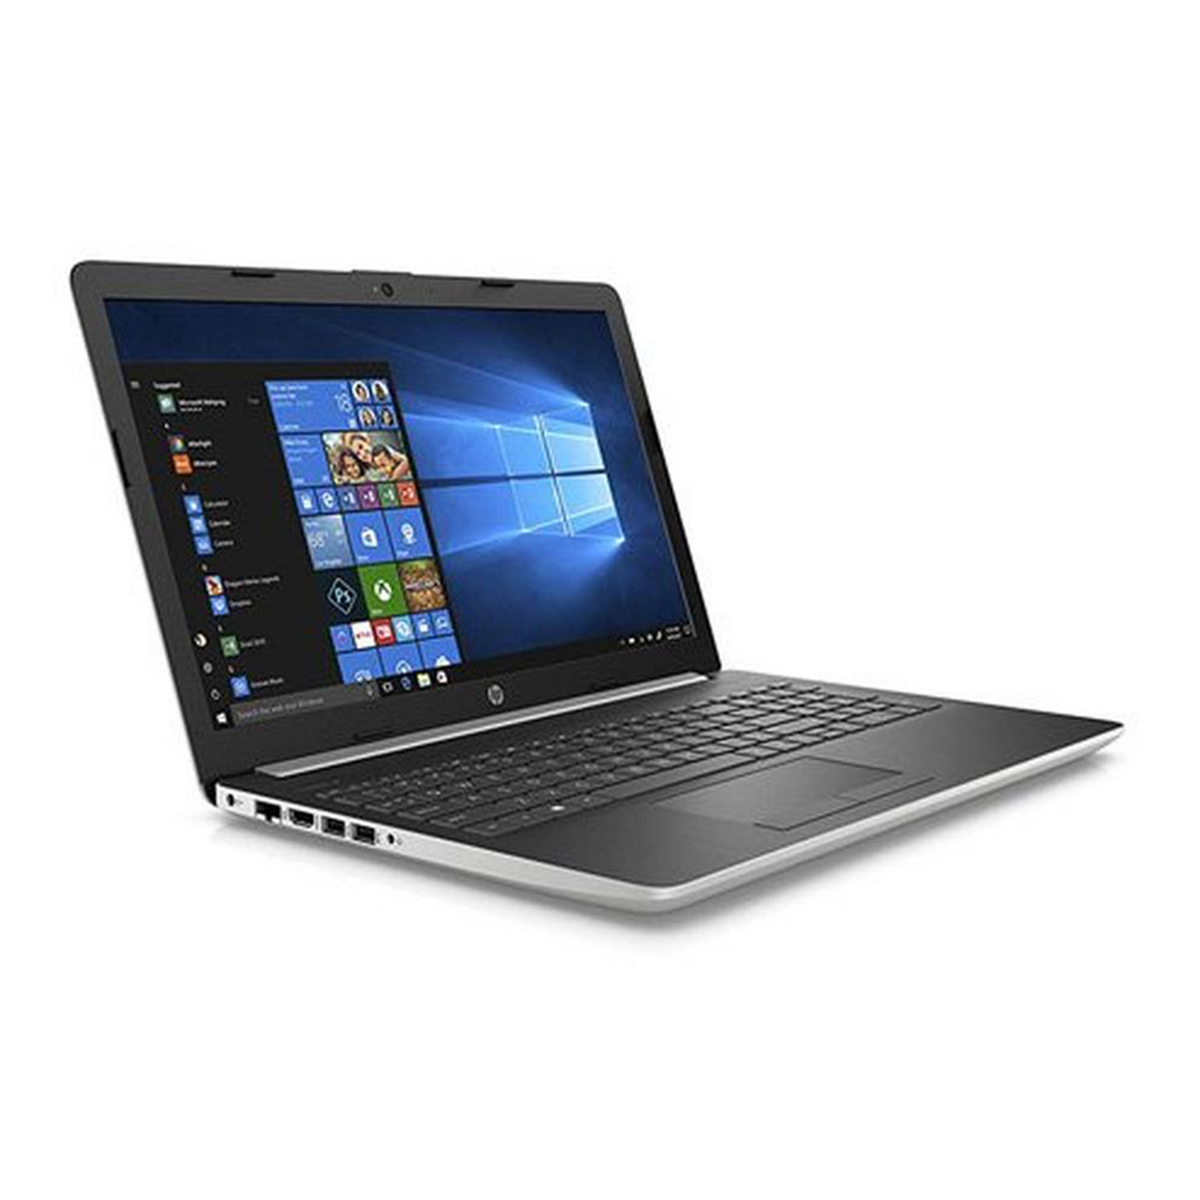 HP Notebook 15-da2331ne Silver (Core i3-10110U,4GB RAM,1TB HDD,Intel HD,15.6",Windows 10)